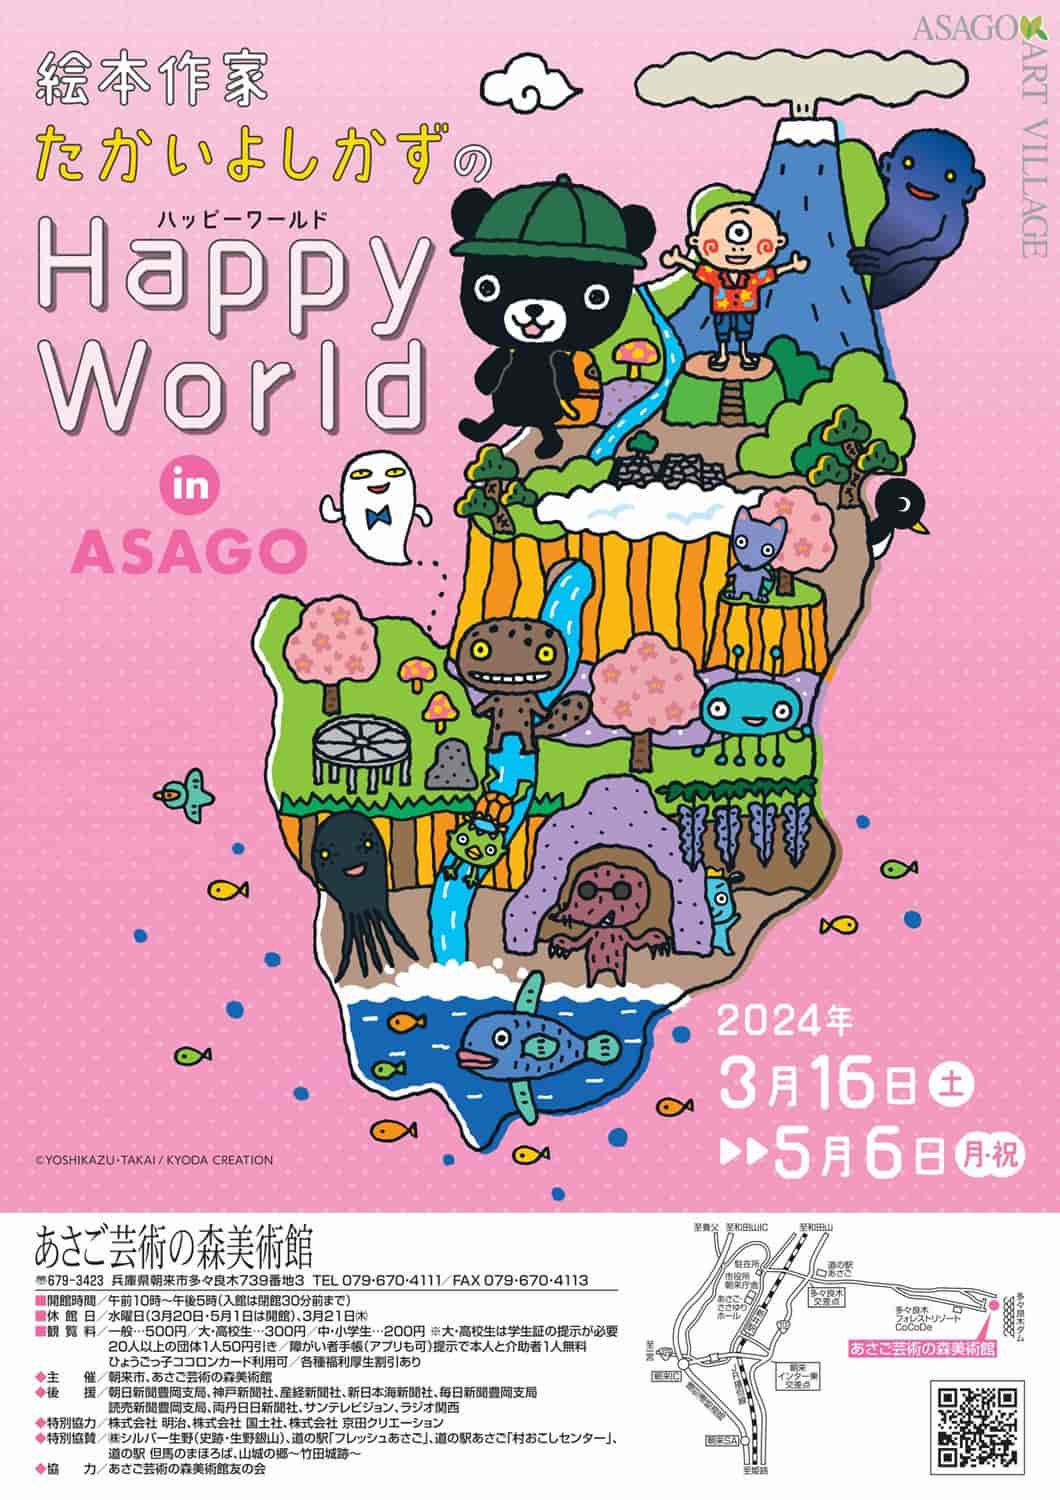 あさご芸術の森美術館で「絵本作家たかいよしかずのHappy World in ASAGO」開催　朝来市 [画像]